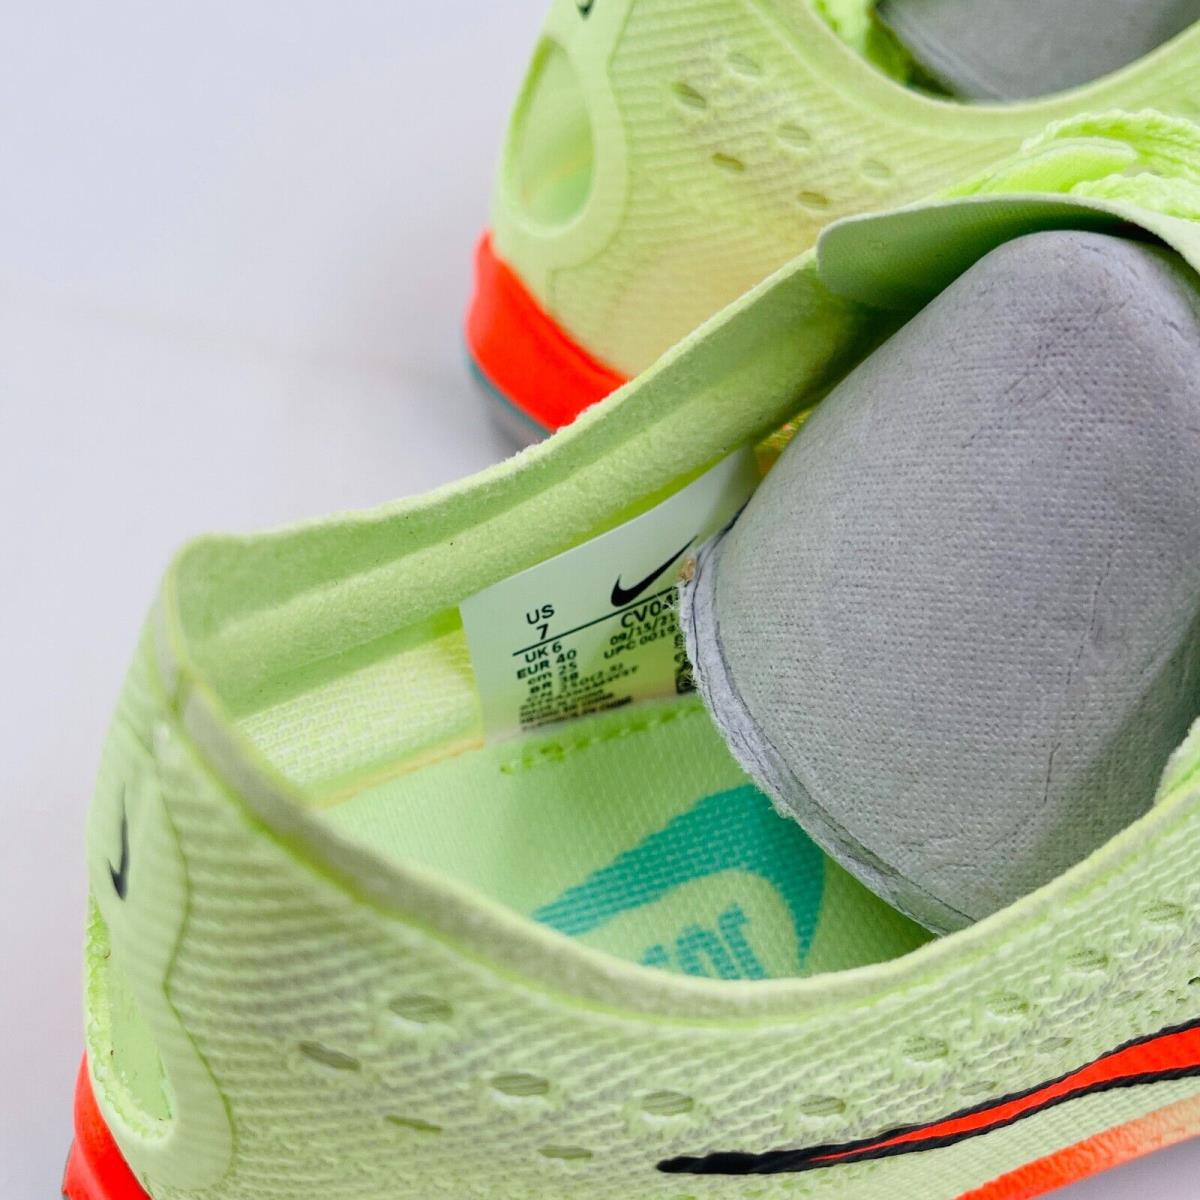 Nike shoes  - Orange 8